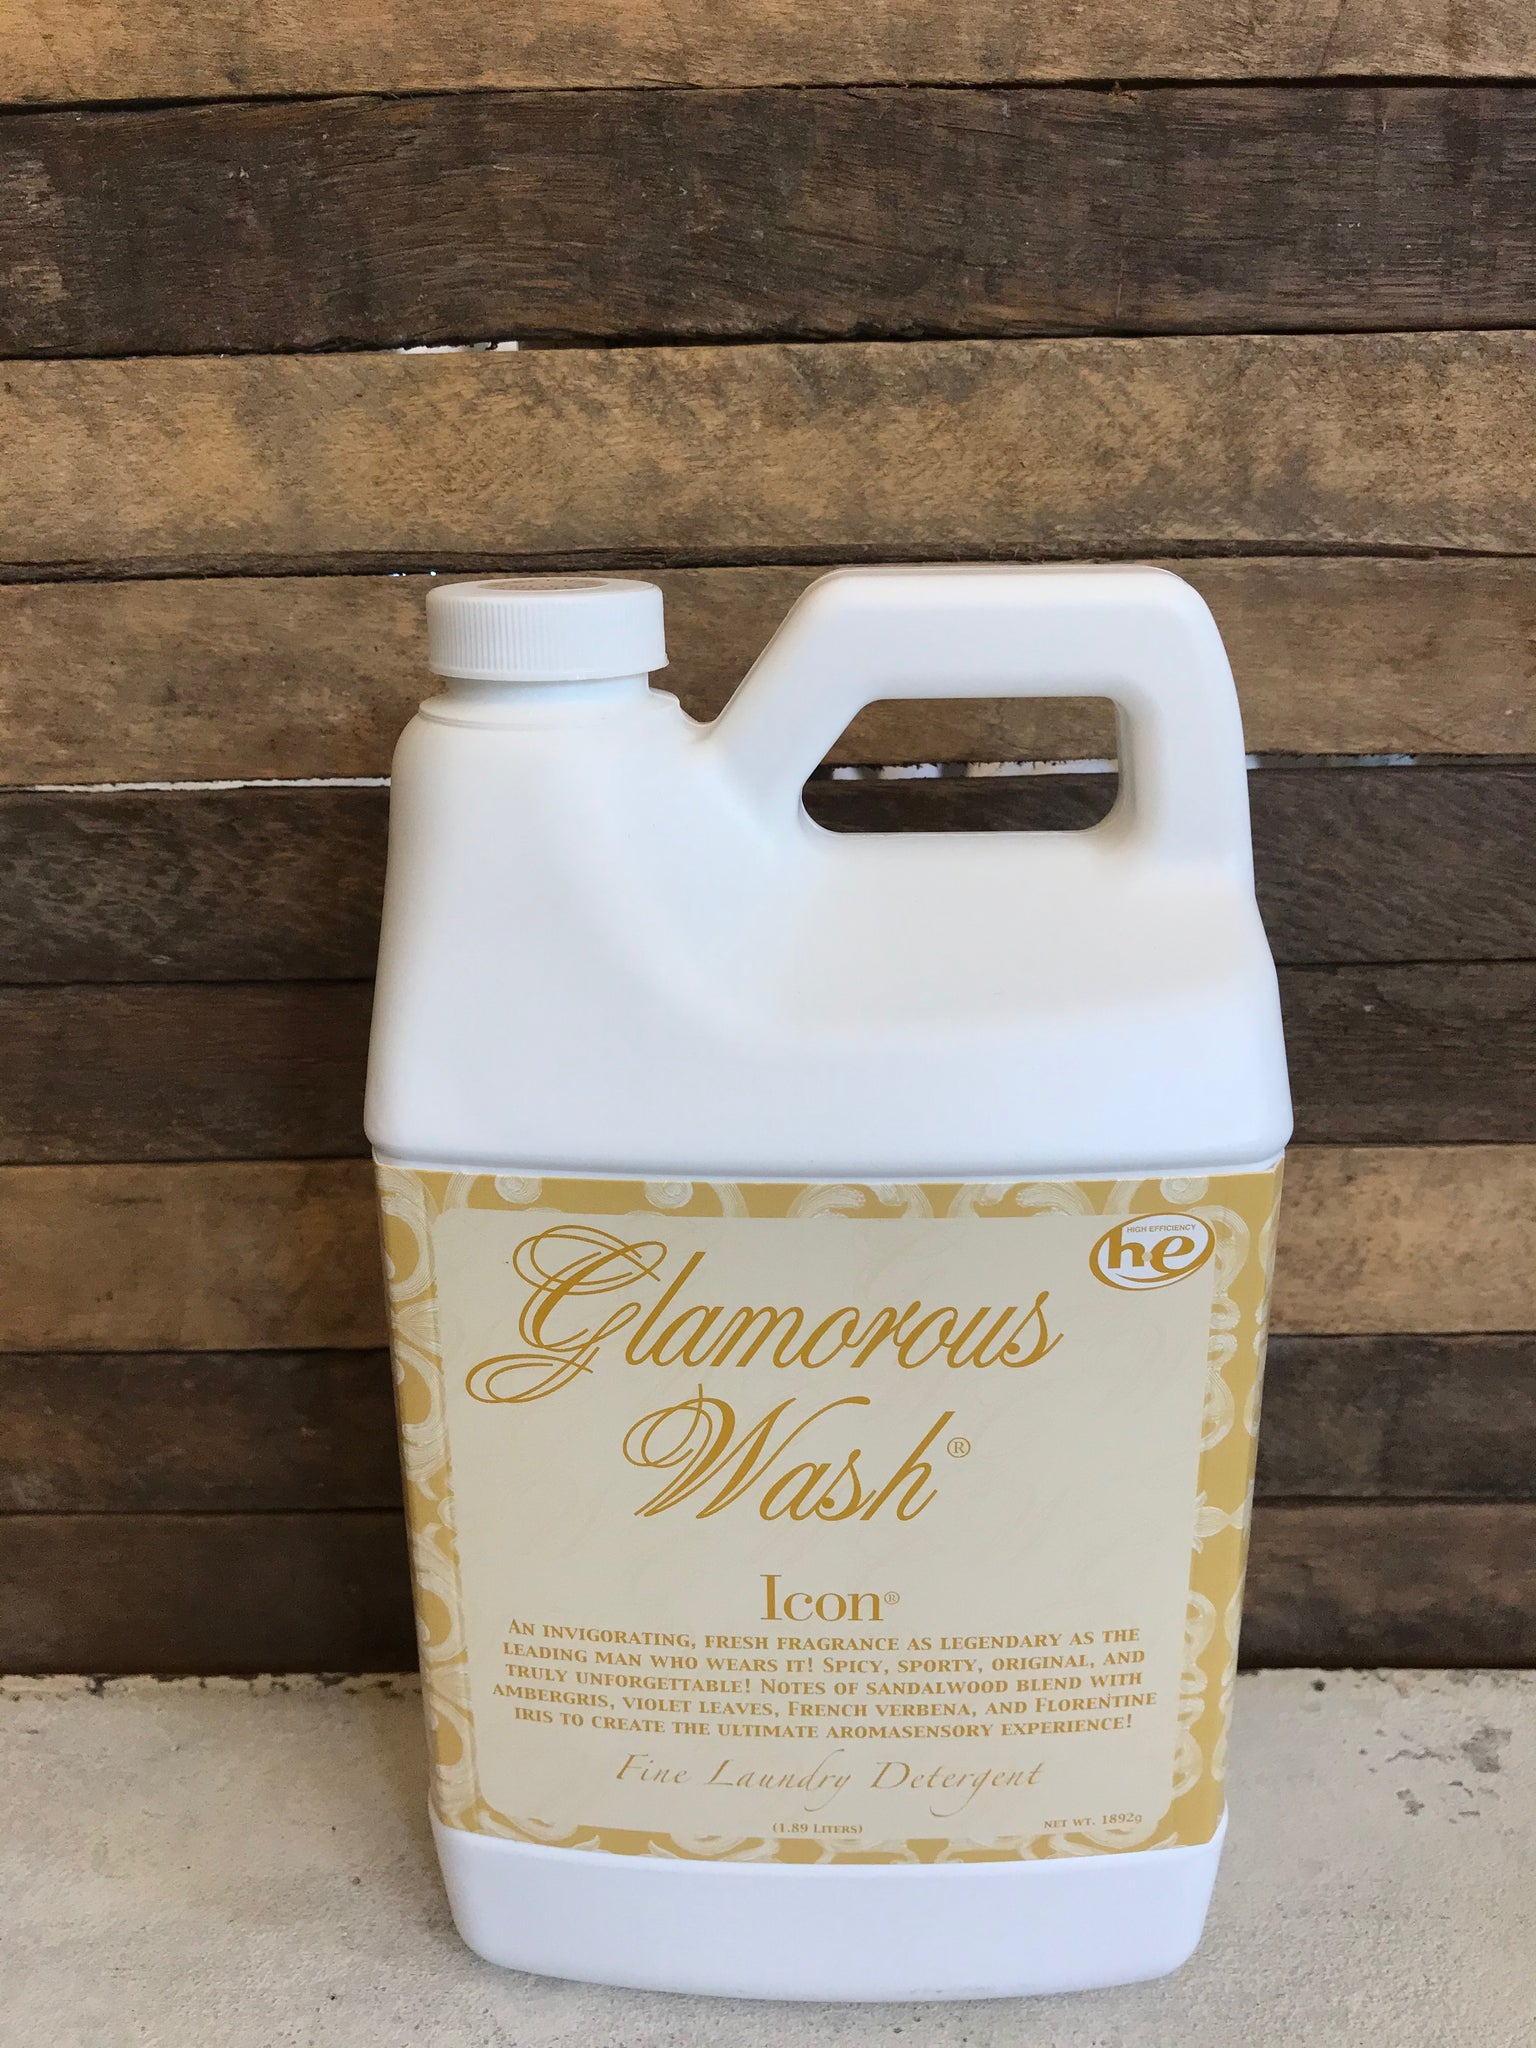 ICON Glamorous Wash 1892 grams